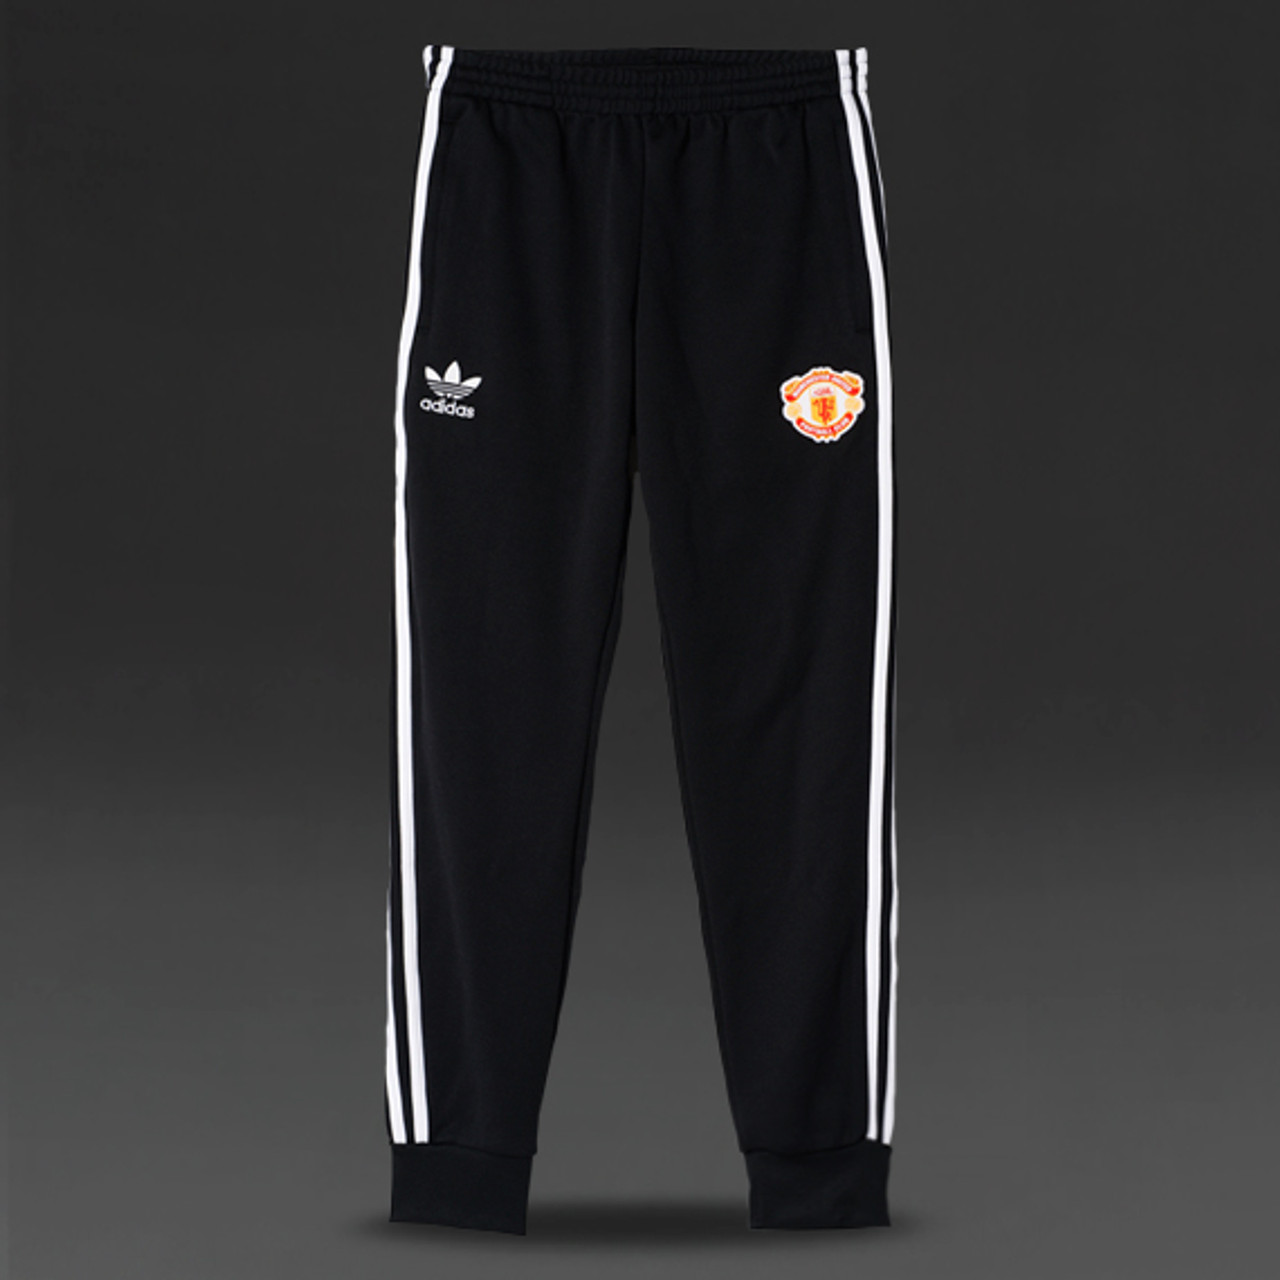 manchester united shorts adidas